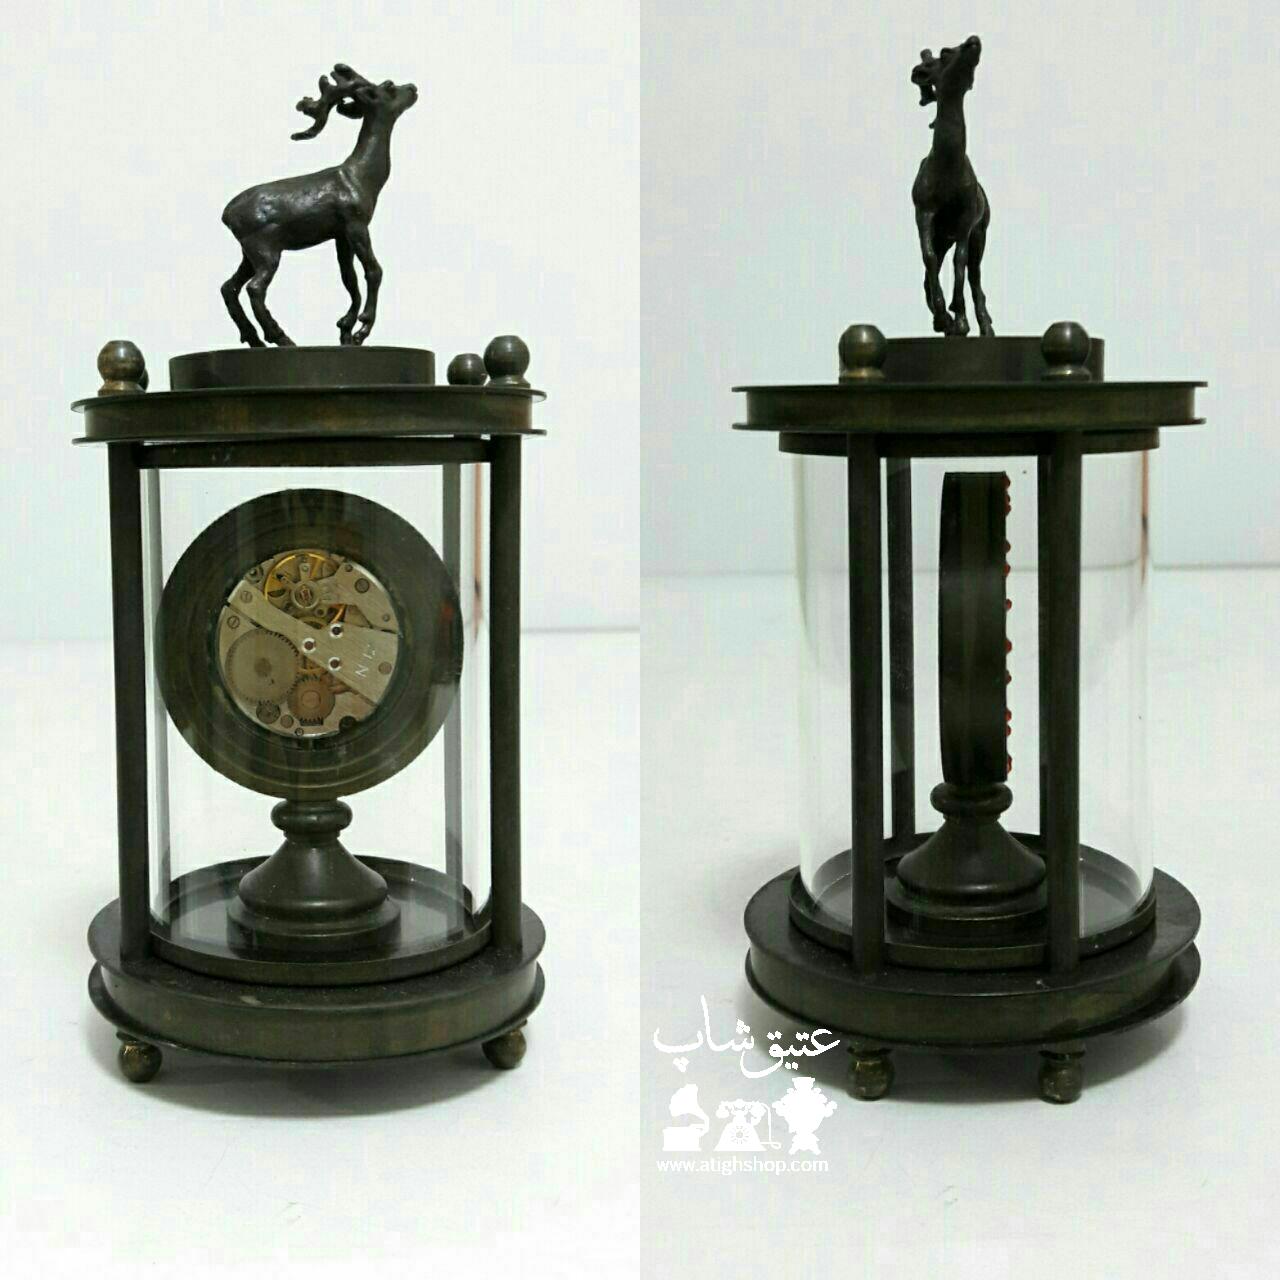 ساعت کوکی امگا برنزی سوئیسی تاریخدار ۱۸۲۵میلادی سالم و طرح قدیم میباشد  ارتفاع ۱۳ سانت طول ۷ سانت